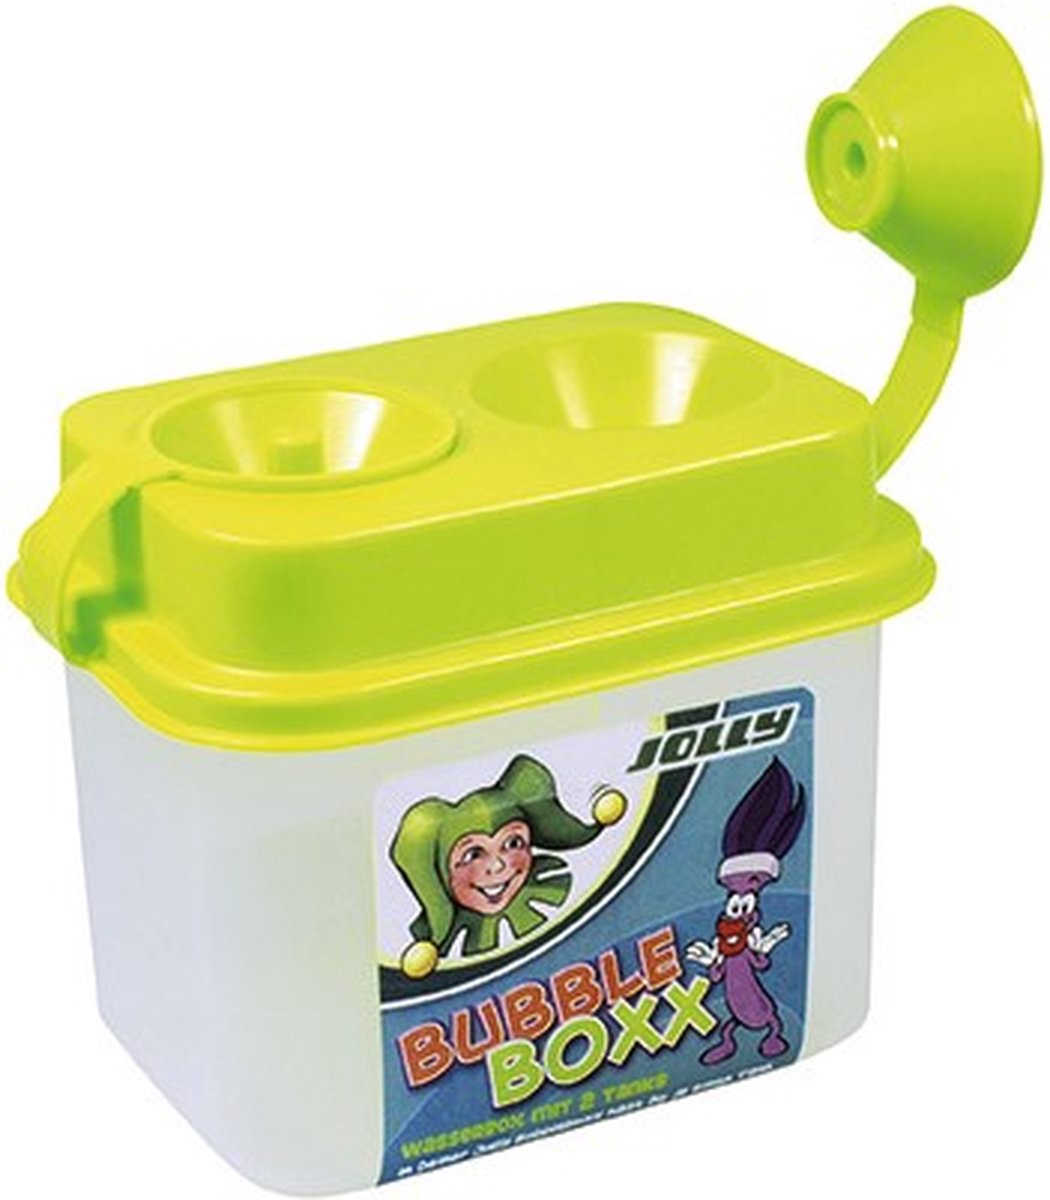 Jolly Bubblebox Water2Go - Jolly